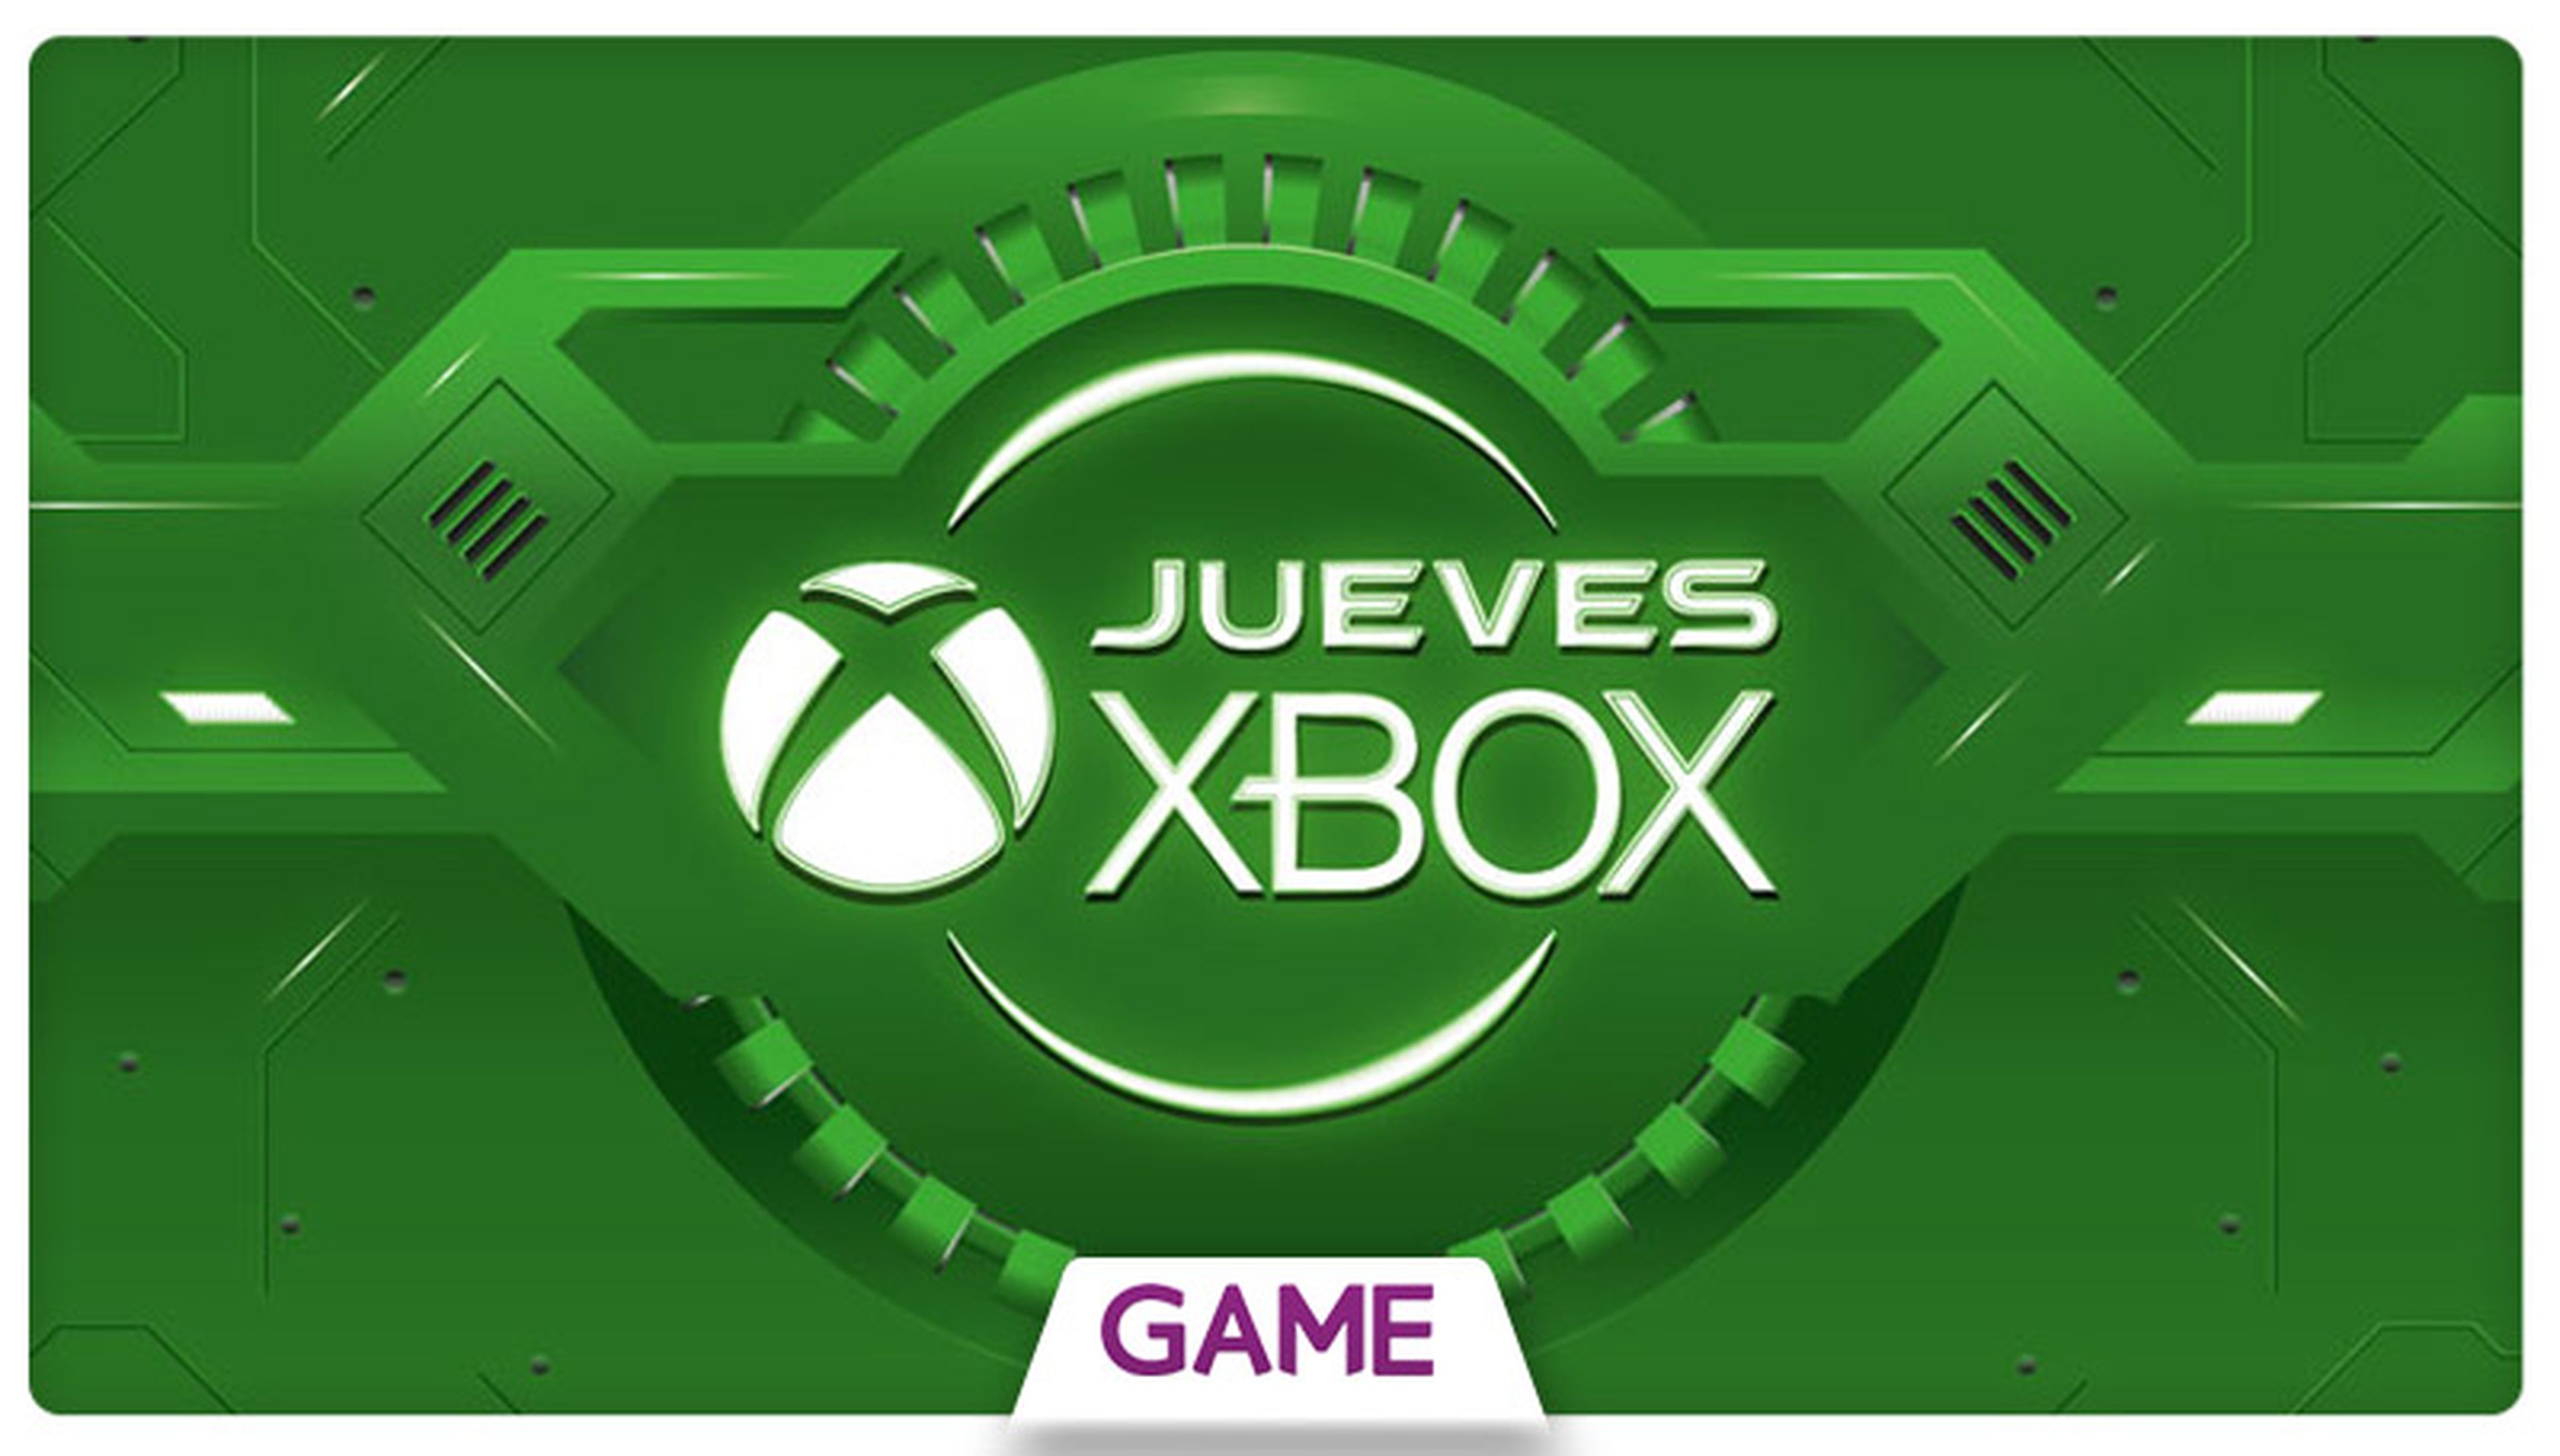 Jueves Xbox en GAME: Ofertas del 24/12/2015